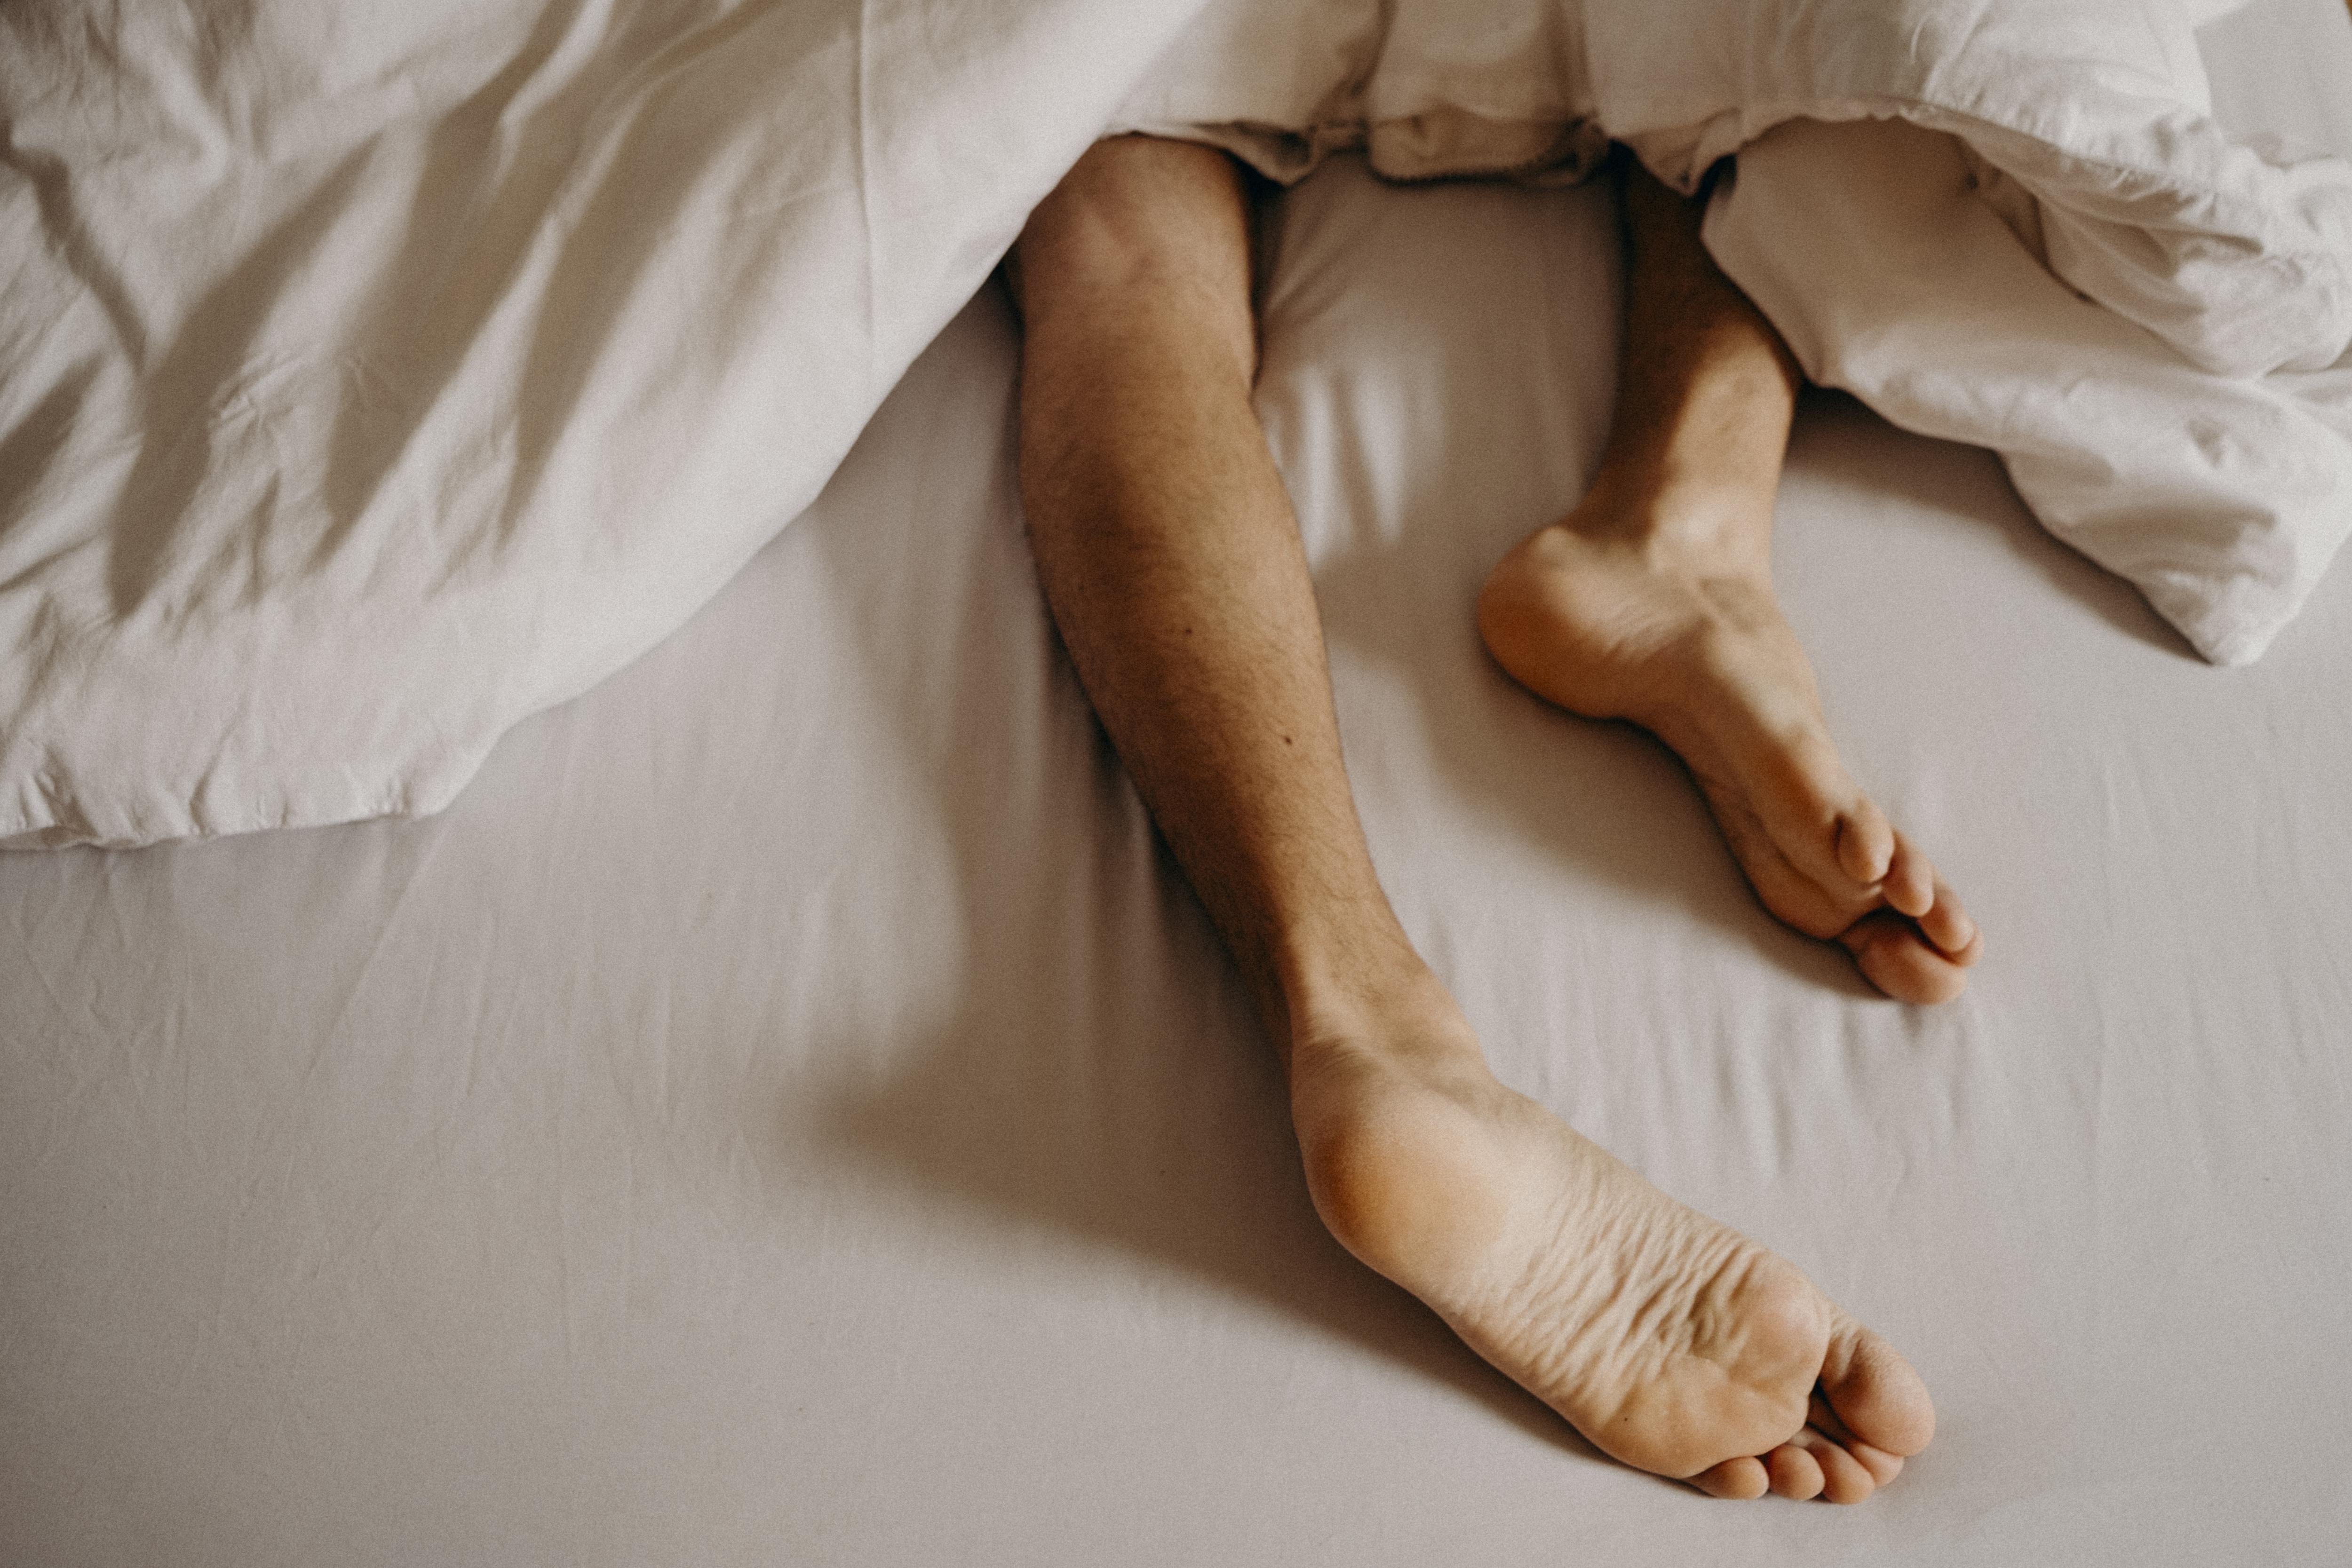 Сводит ногу во время сна